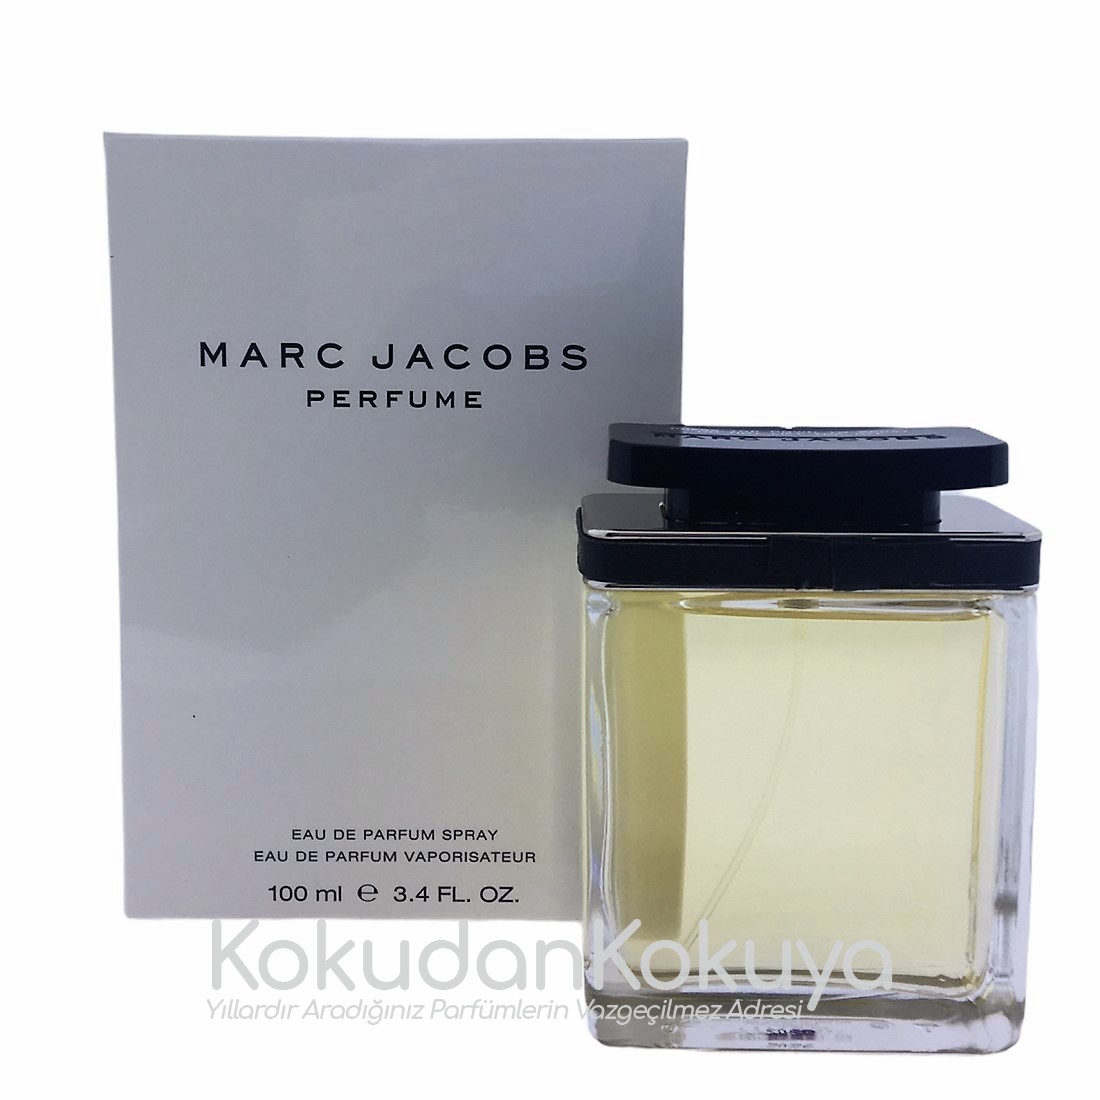 MARC JACOBS Kadın Perfume (Vintage)